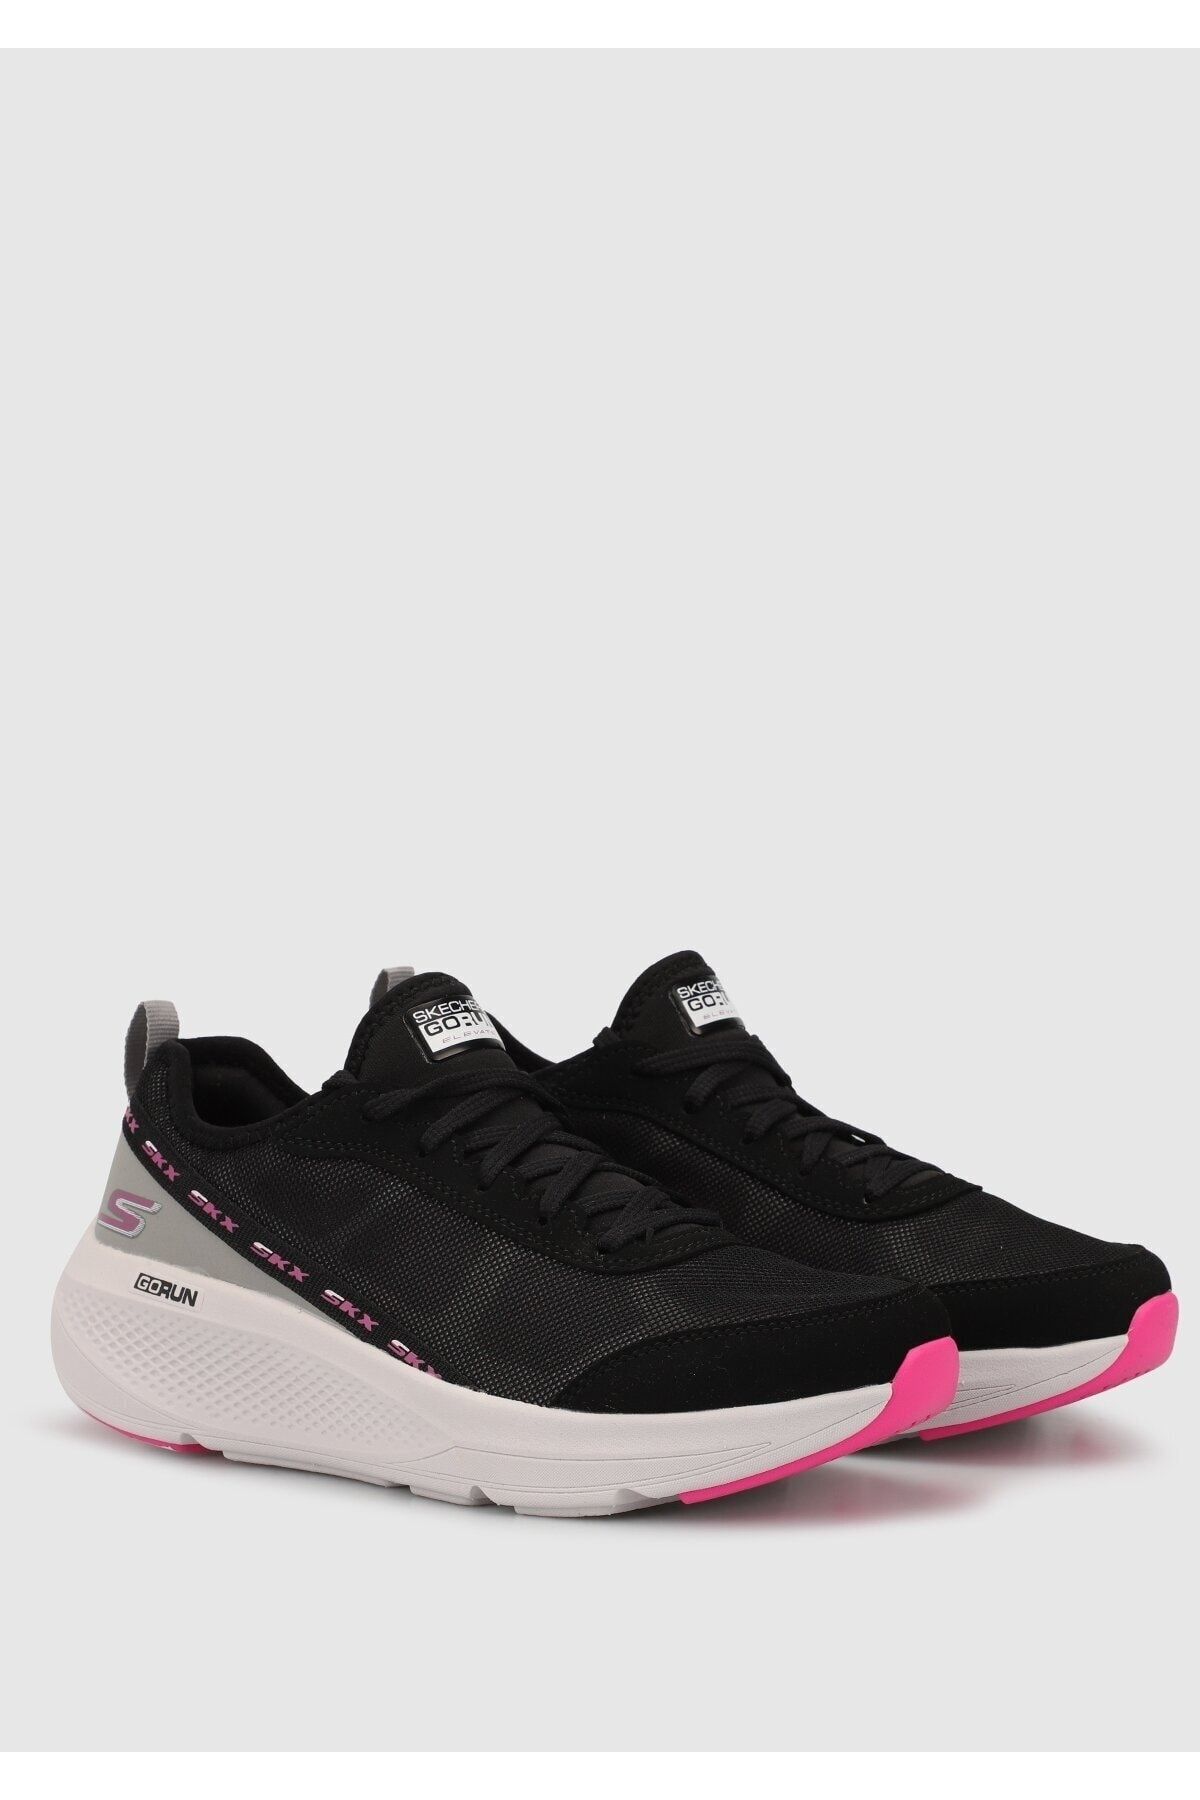 Skechers Go Run Elevate Kadın Siyah Koşu Ayakkabısı - 128318 Fiyatı, Yorumları